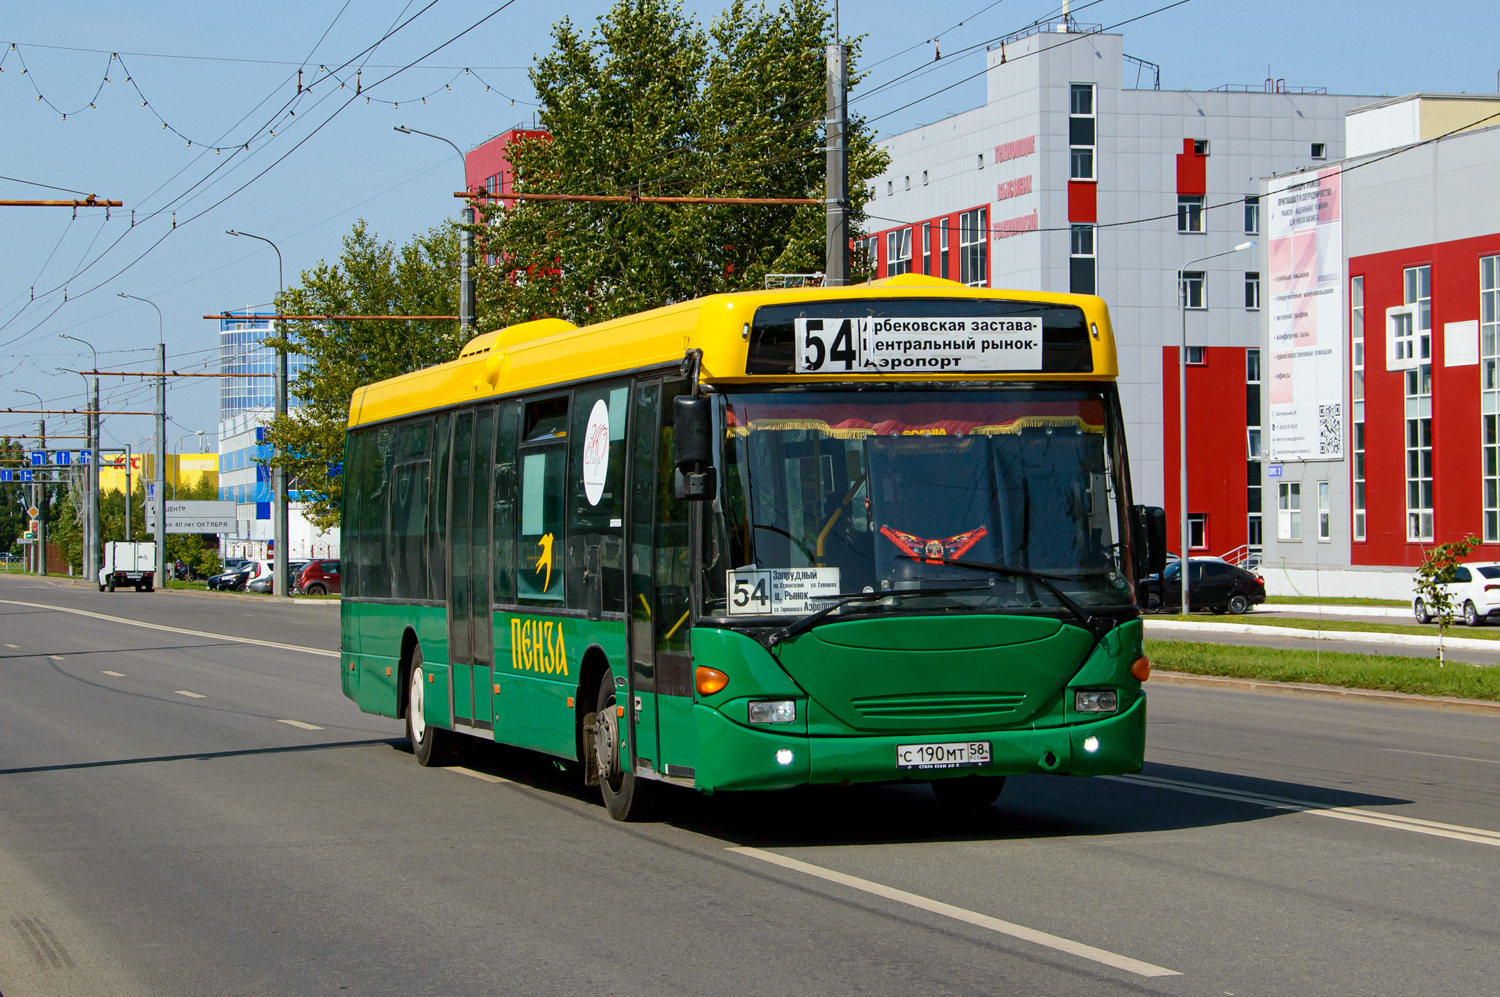 Obwód penzeński, Scania OmniLink I (Scania-St.Petersburg) Nr С 190 МТ 58